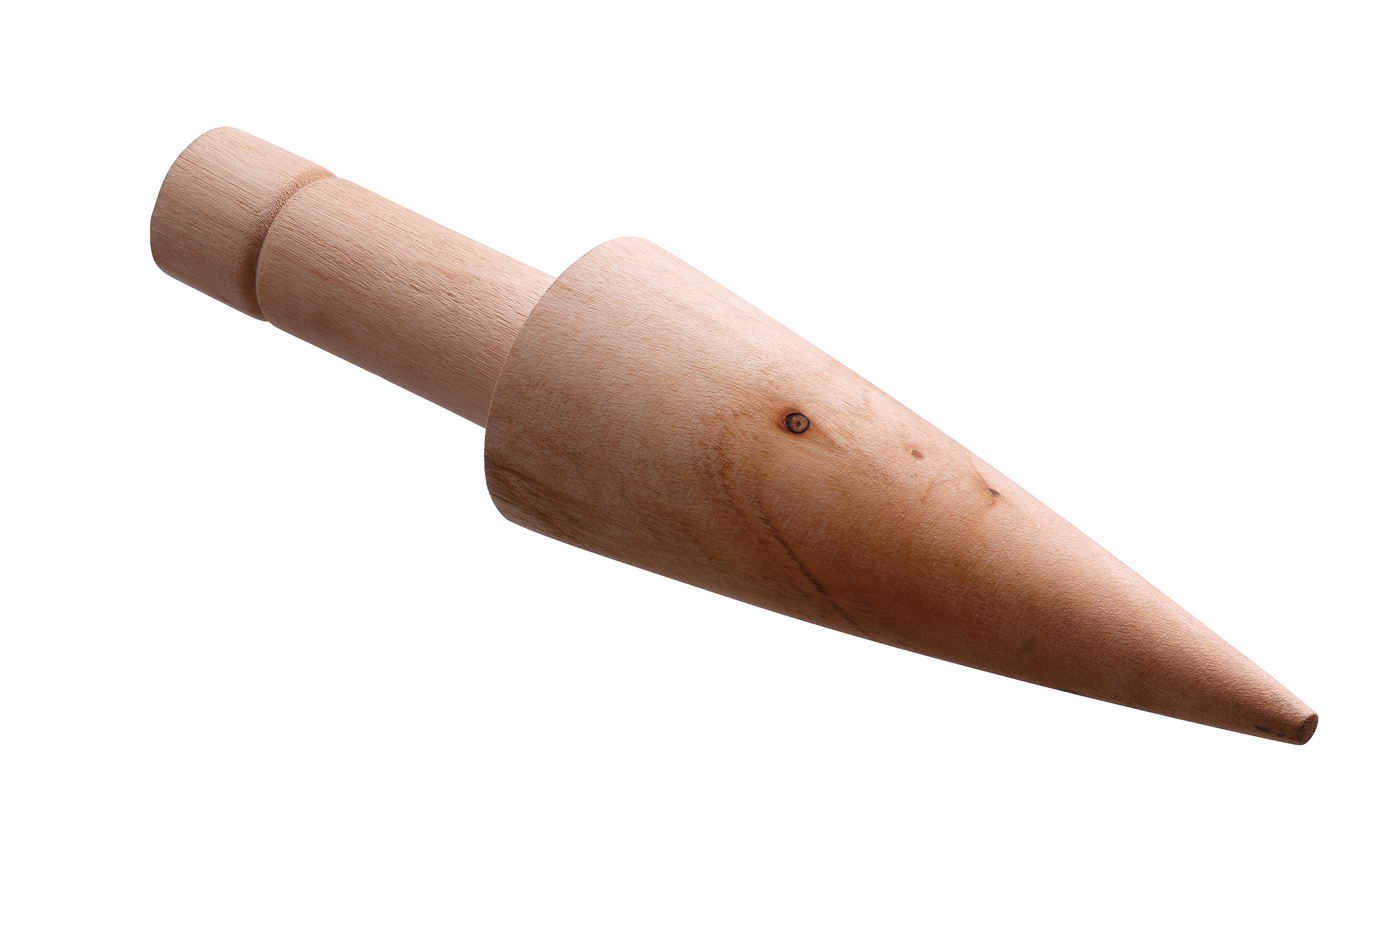 Bartscher Waffelhörnchenformer MDI Cone 2120 | Ausgelegt für: Formen von Waffelhörnchen | Maße: 25 x 6 x 60 cm. Gewicht: 0,14 kg